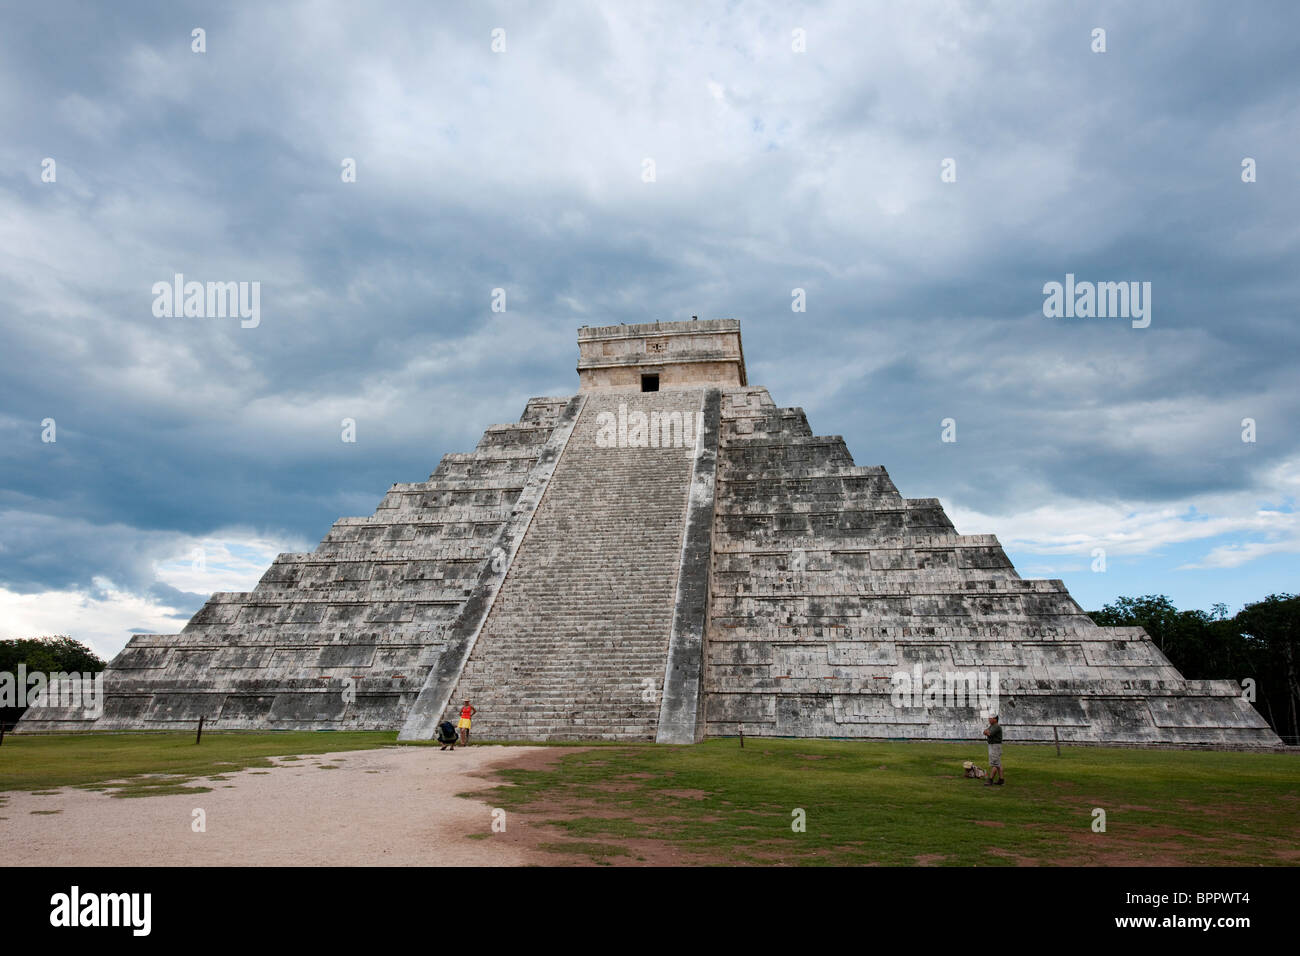 El Castillo, Chichen Itza ruins, The Yucatan, Mexico Stock Photo